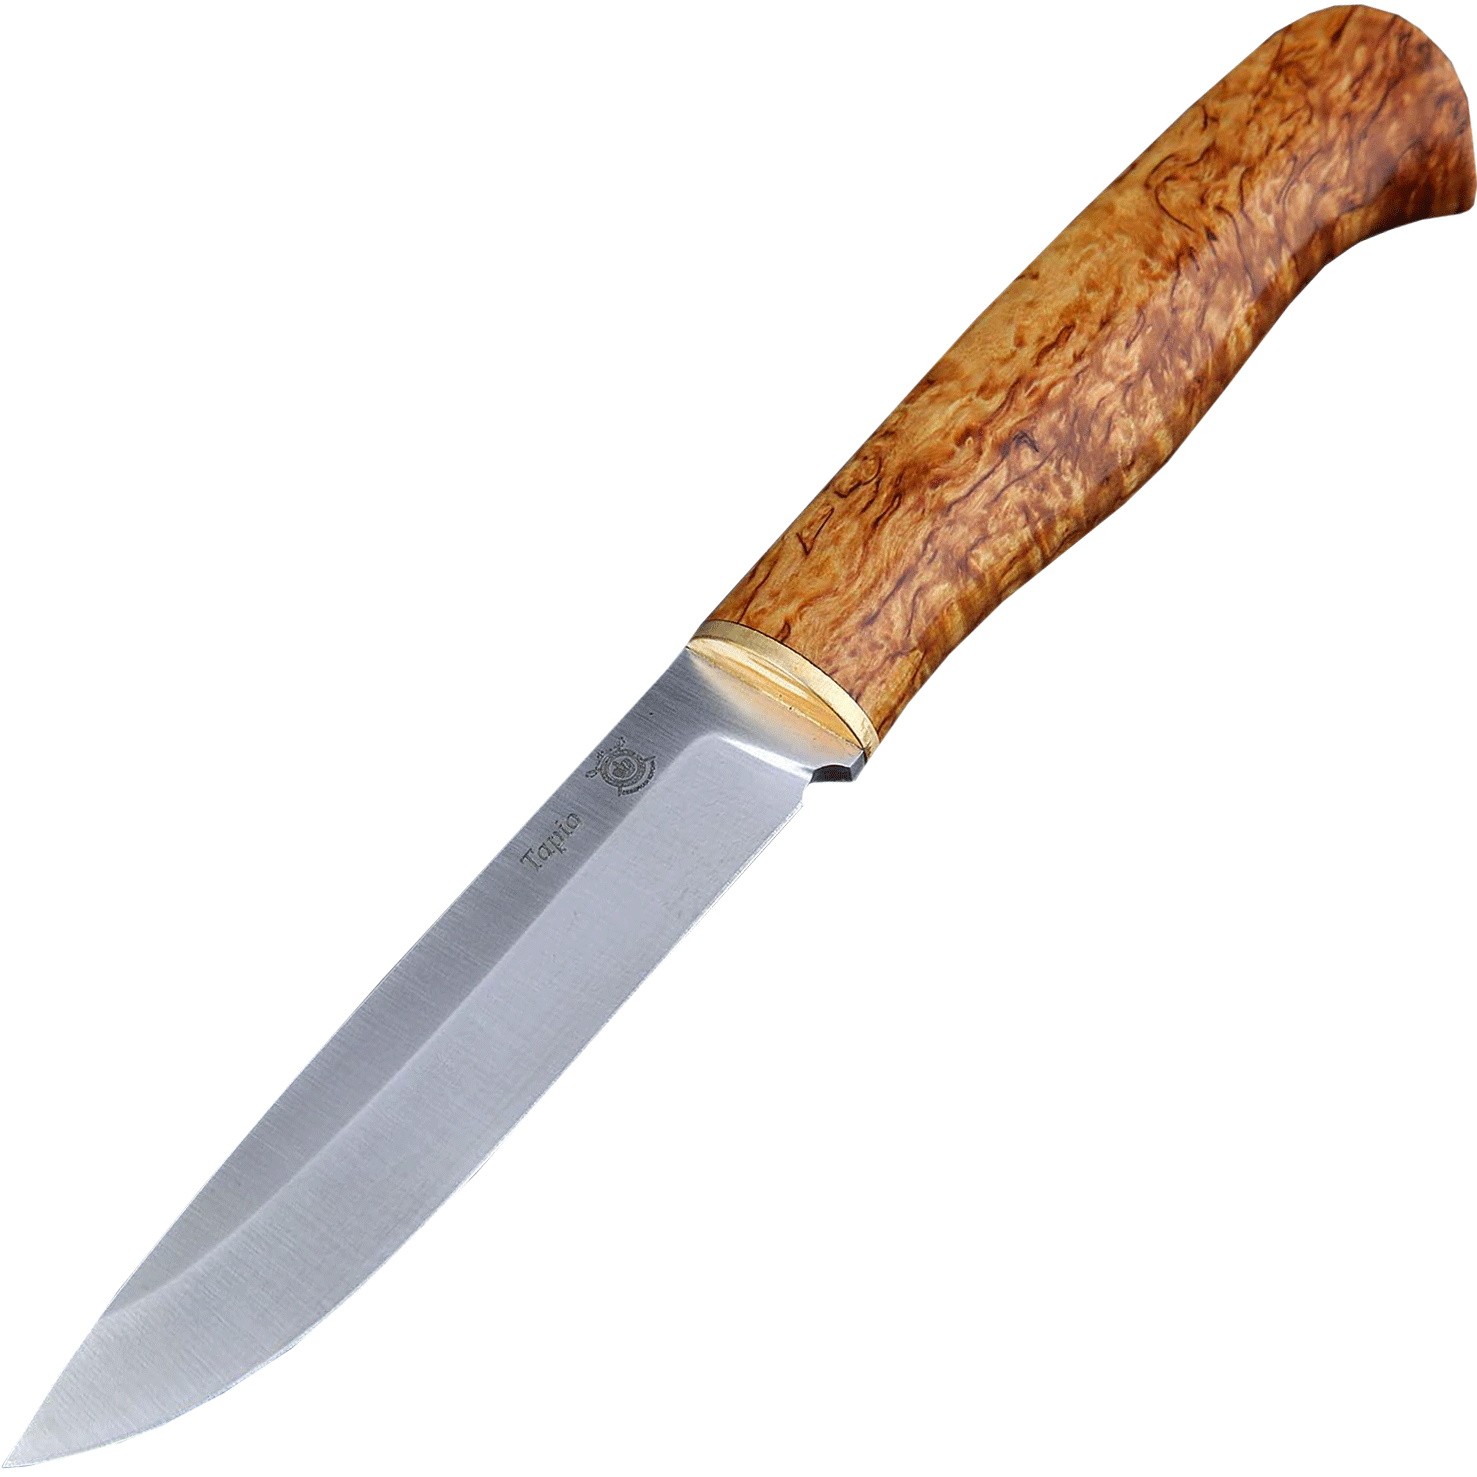 Нож Северная Корона Tapio нержавеющая сталь карельская береза - фото 1